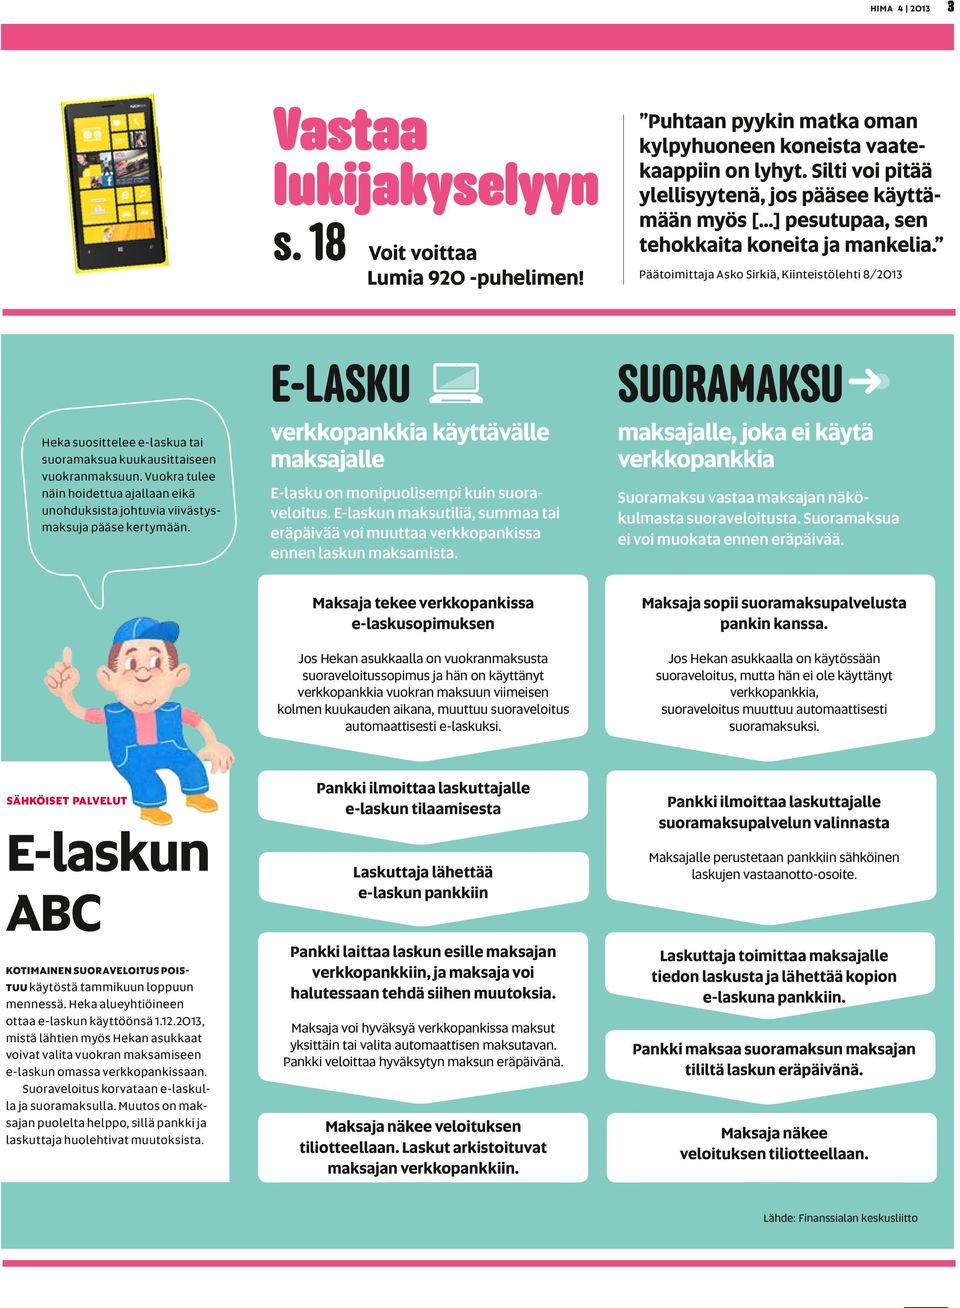 Päätoimittaja Asko Sirkiä, Kiinteistölehti 8/2013 Heka suosittelee e-laskua tai suoramaksua kuukausittaiseen vuokranmaksuun.